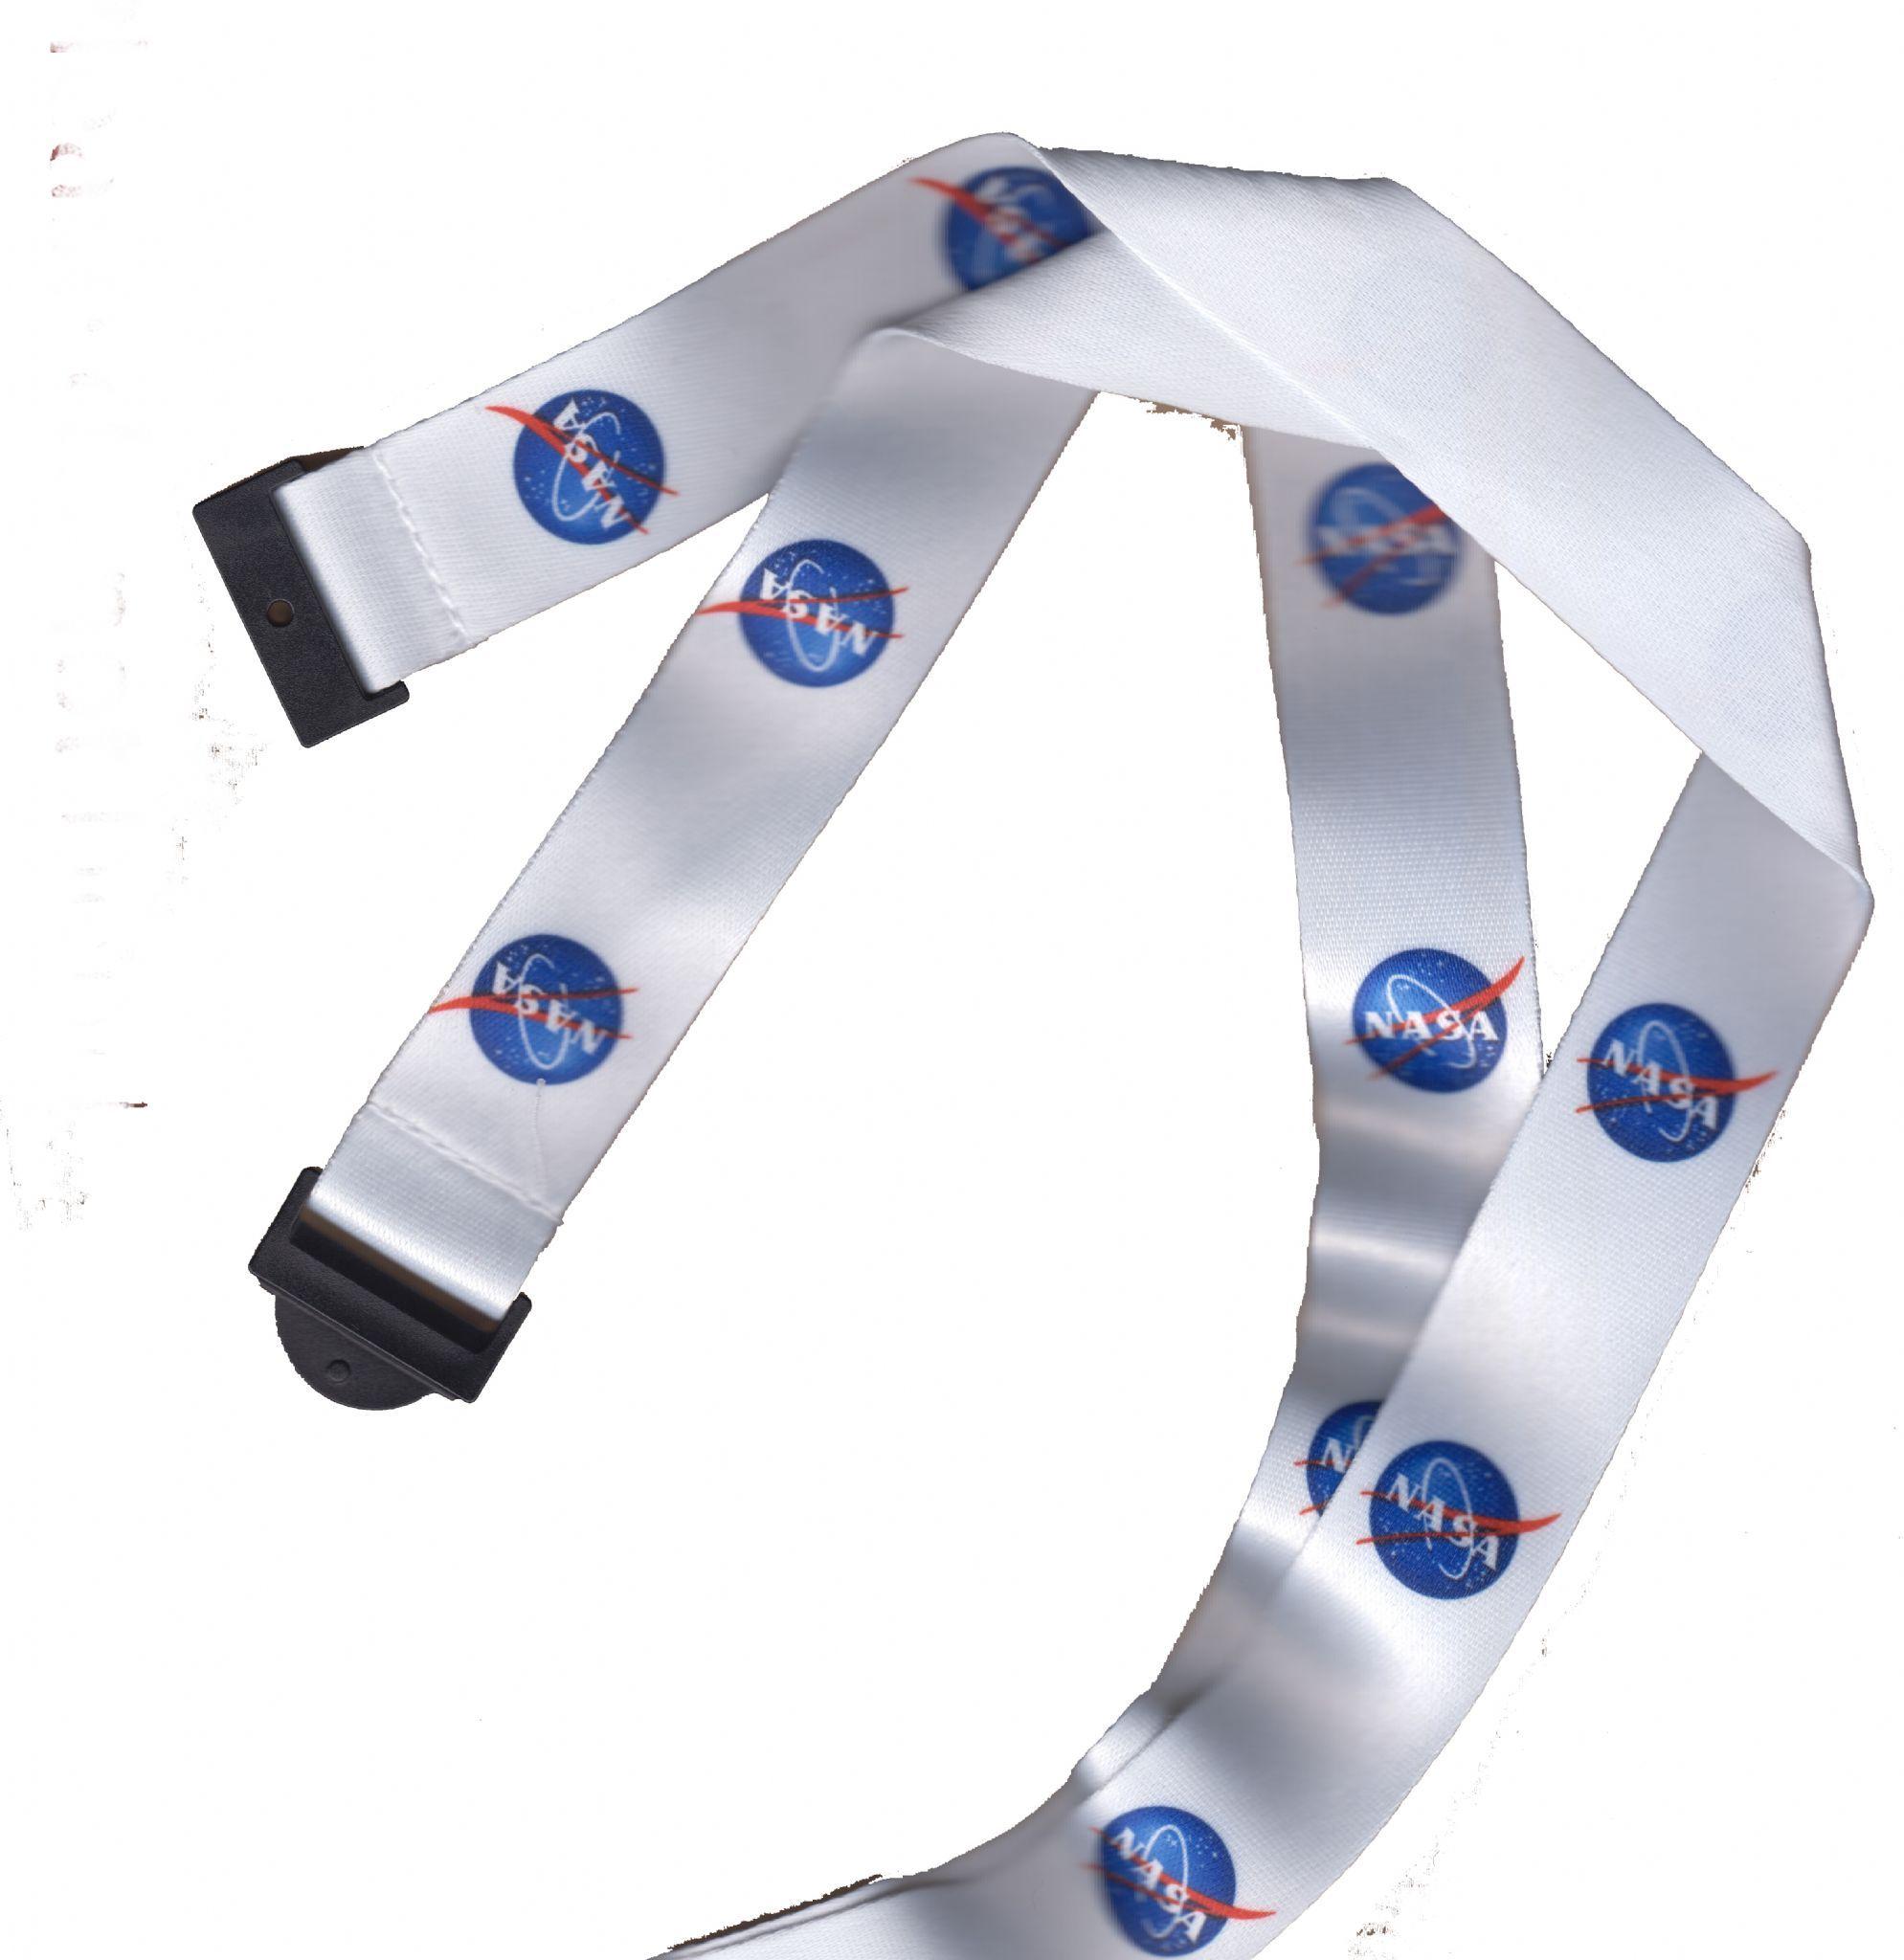 Lanyard with White Logo - NASA Logo Lanyard - White